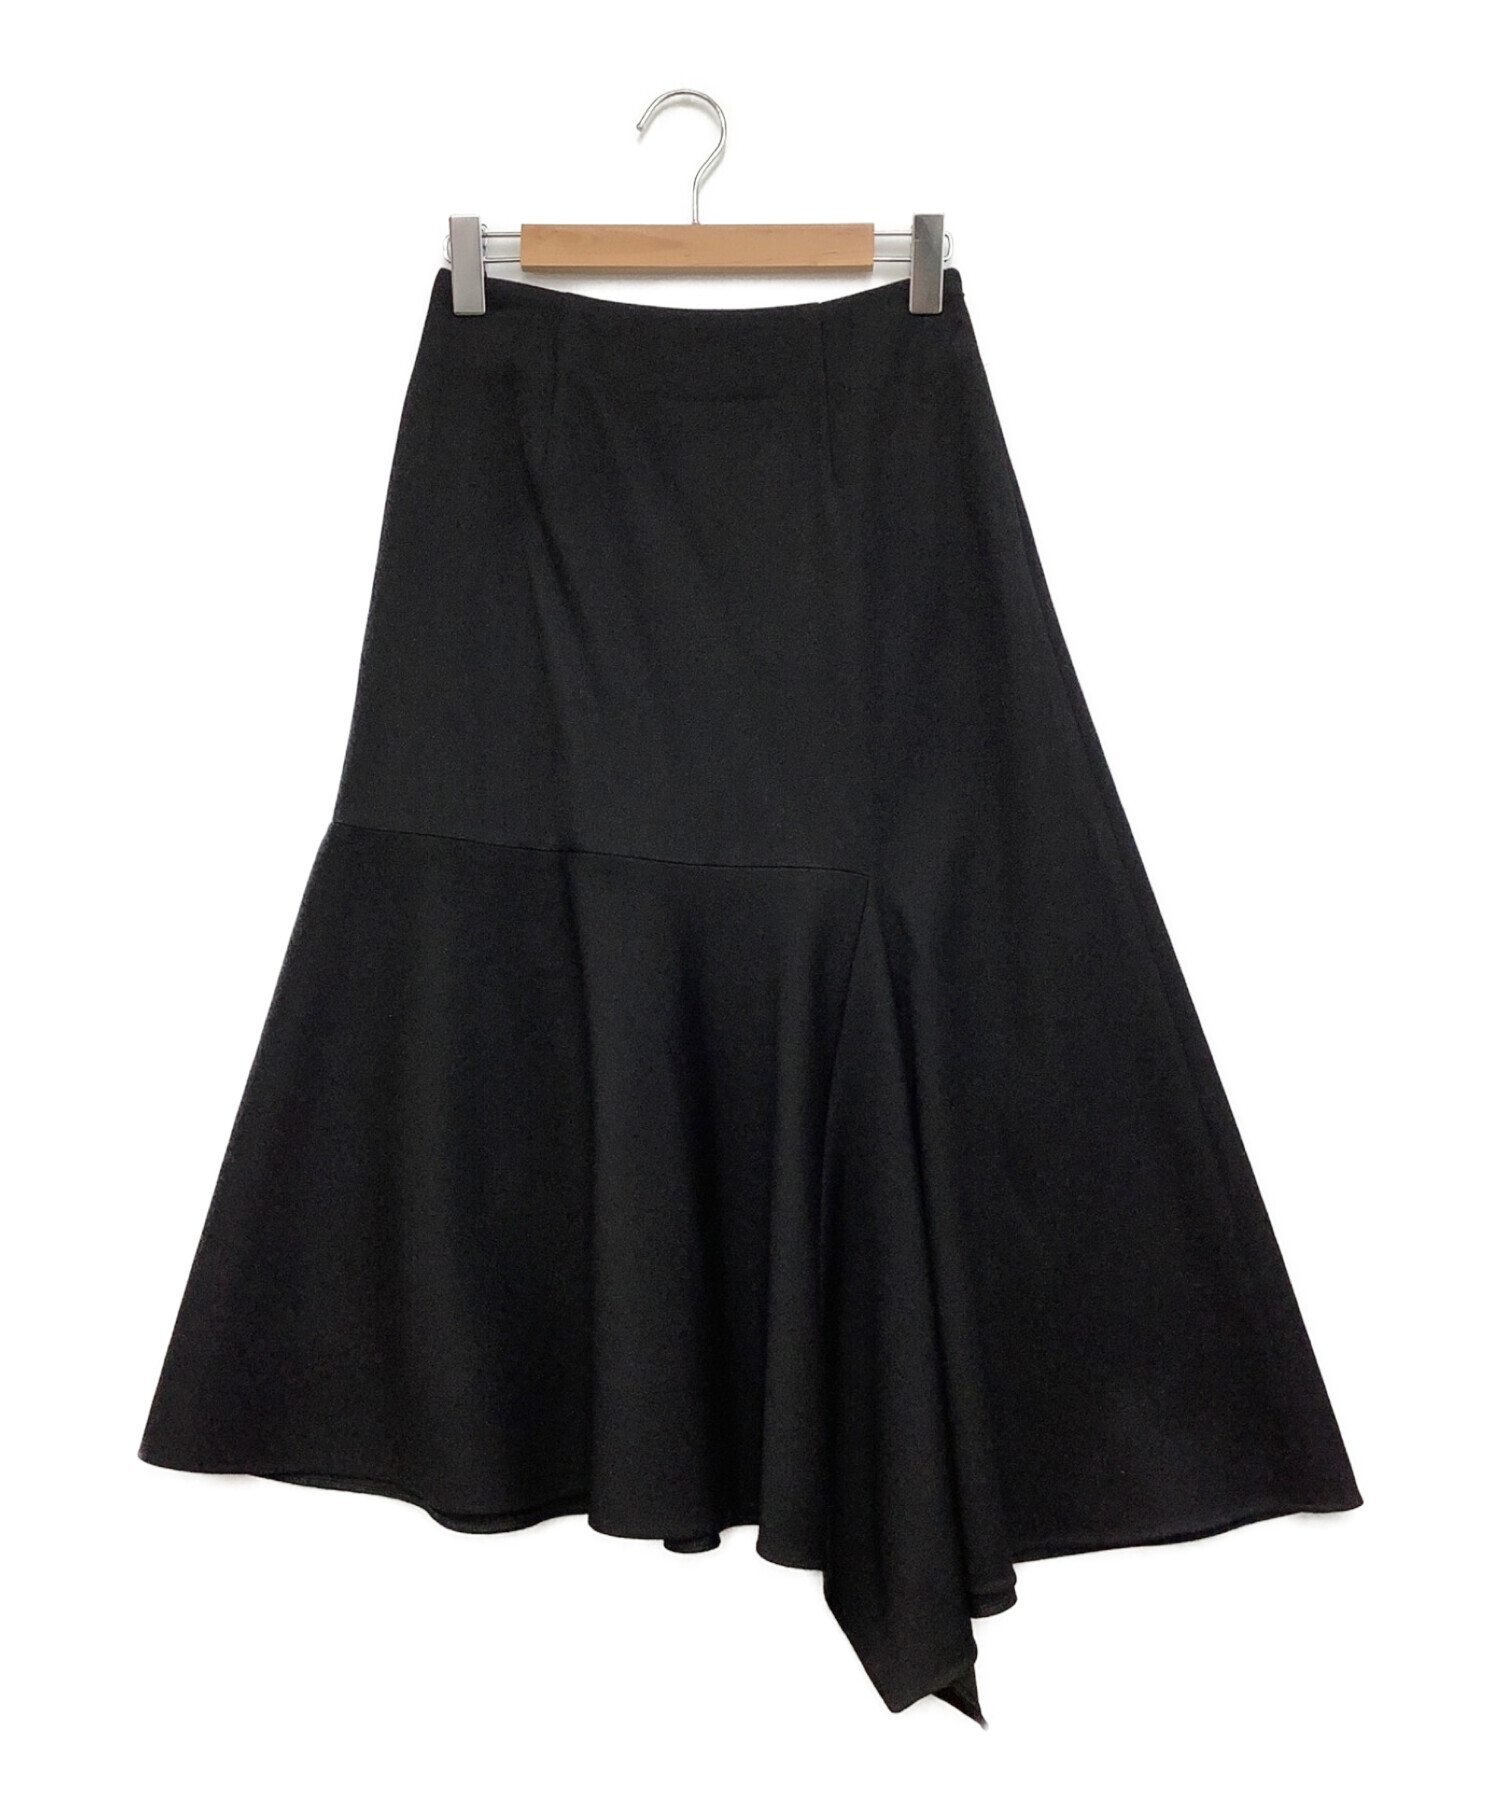 BLENHEIM (ブレンヘイム) ロングフレアスカート ブラック サイズ:M 未使用品